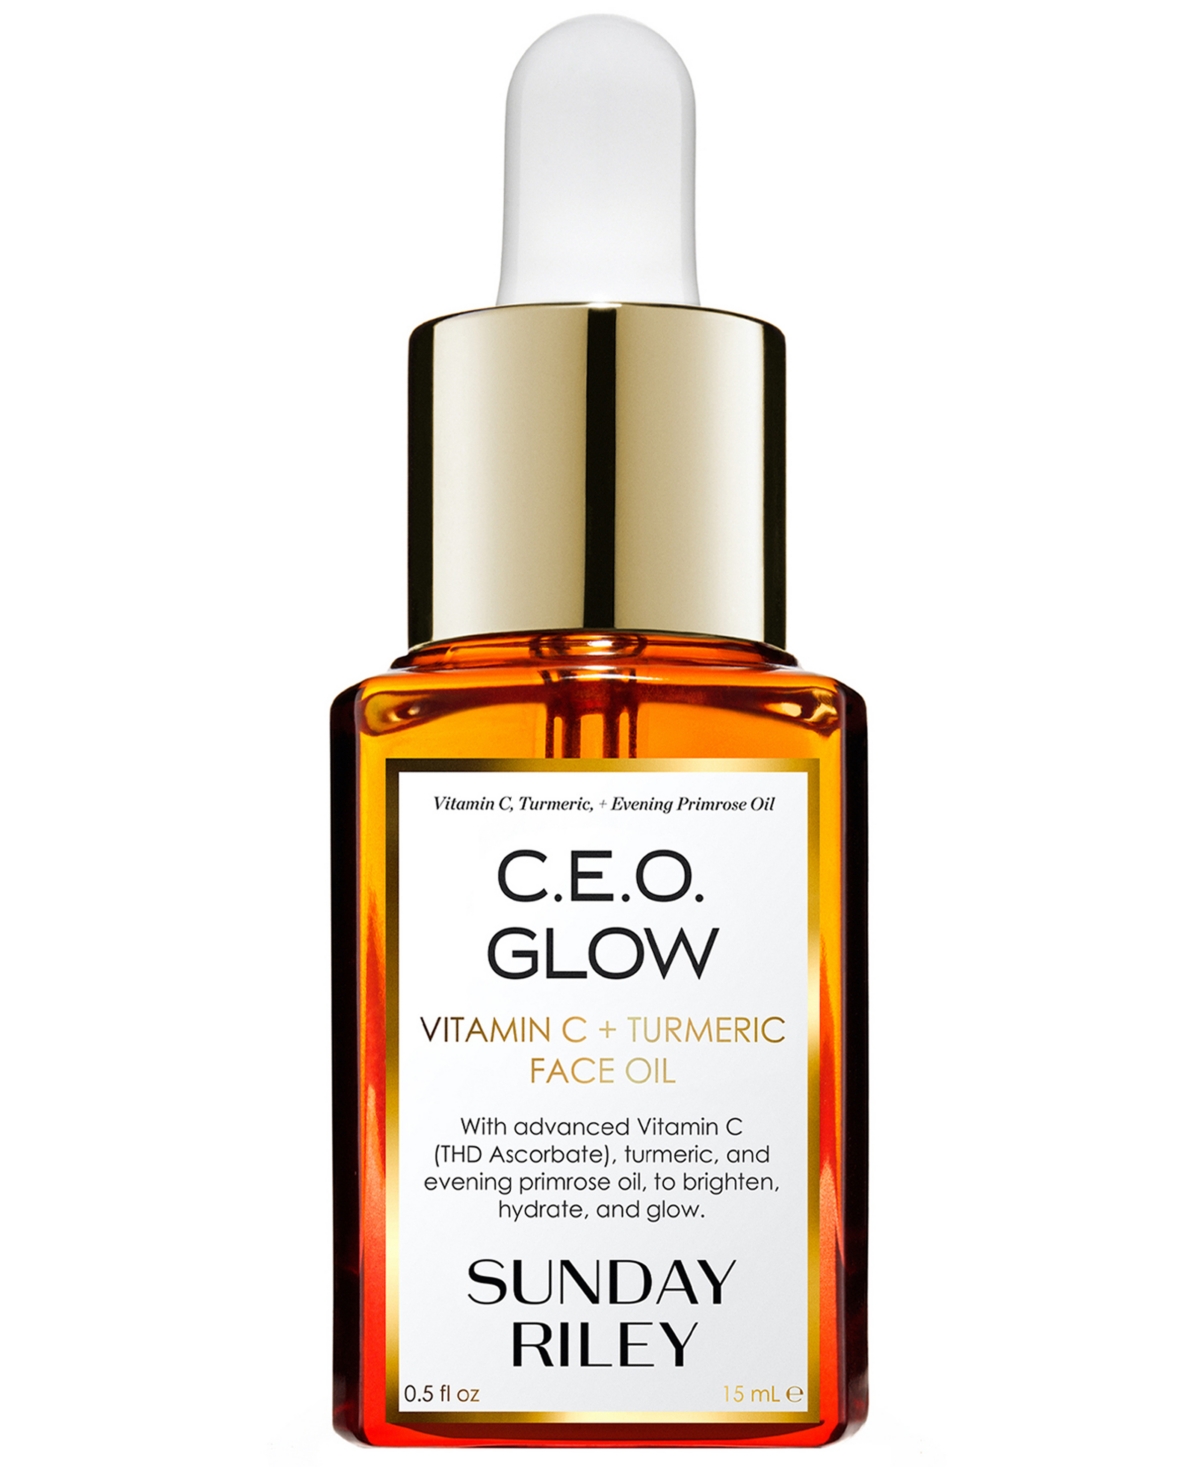 C.E.O. Glow Vitamin C + Turmeric Face Oil, 0.5oz.